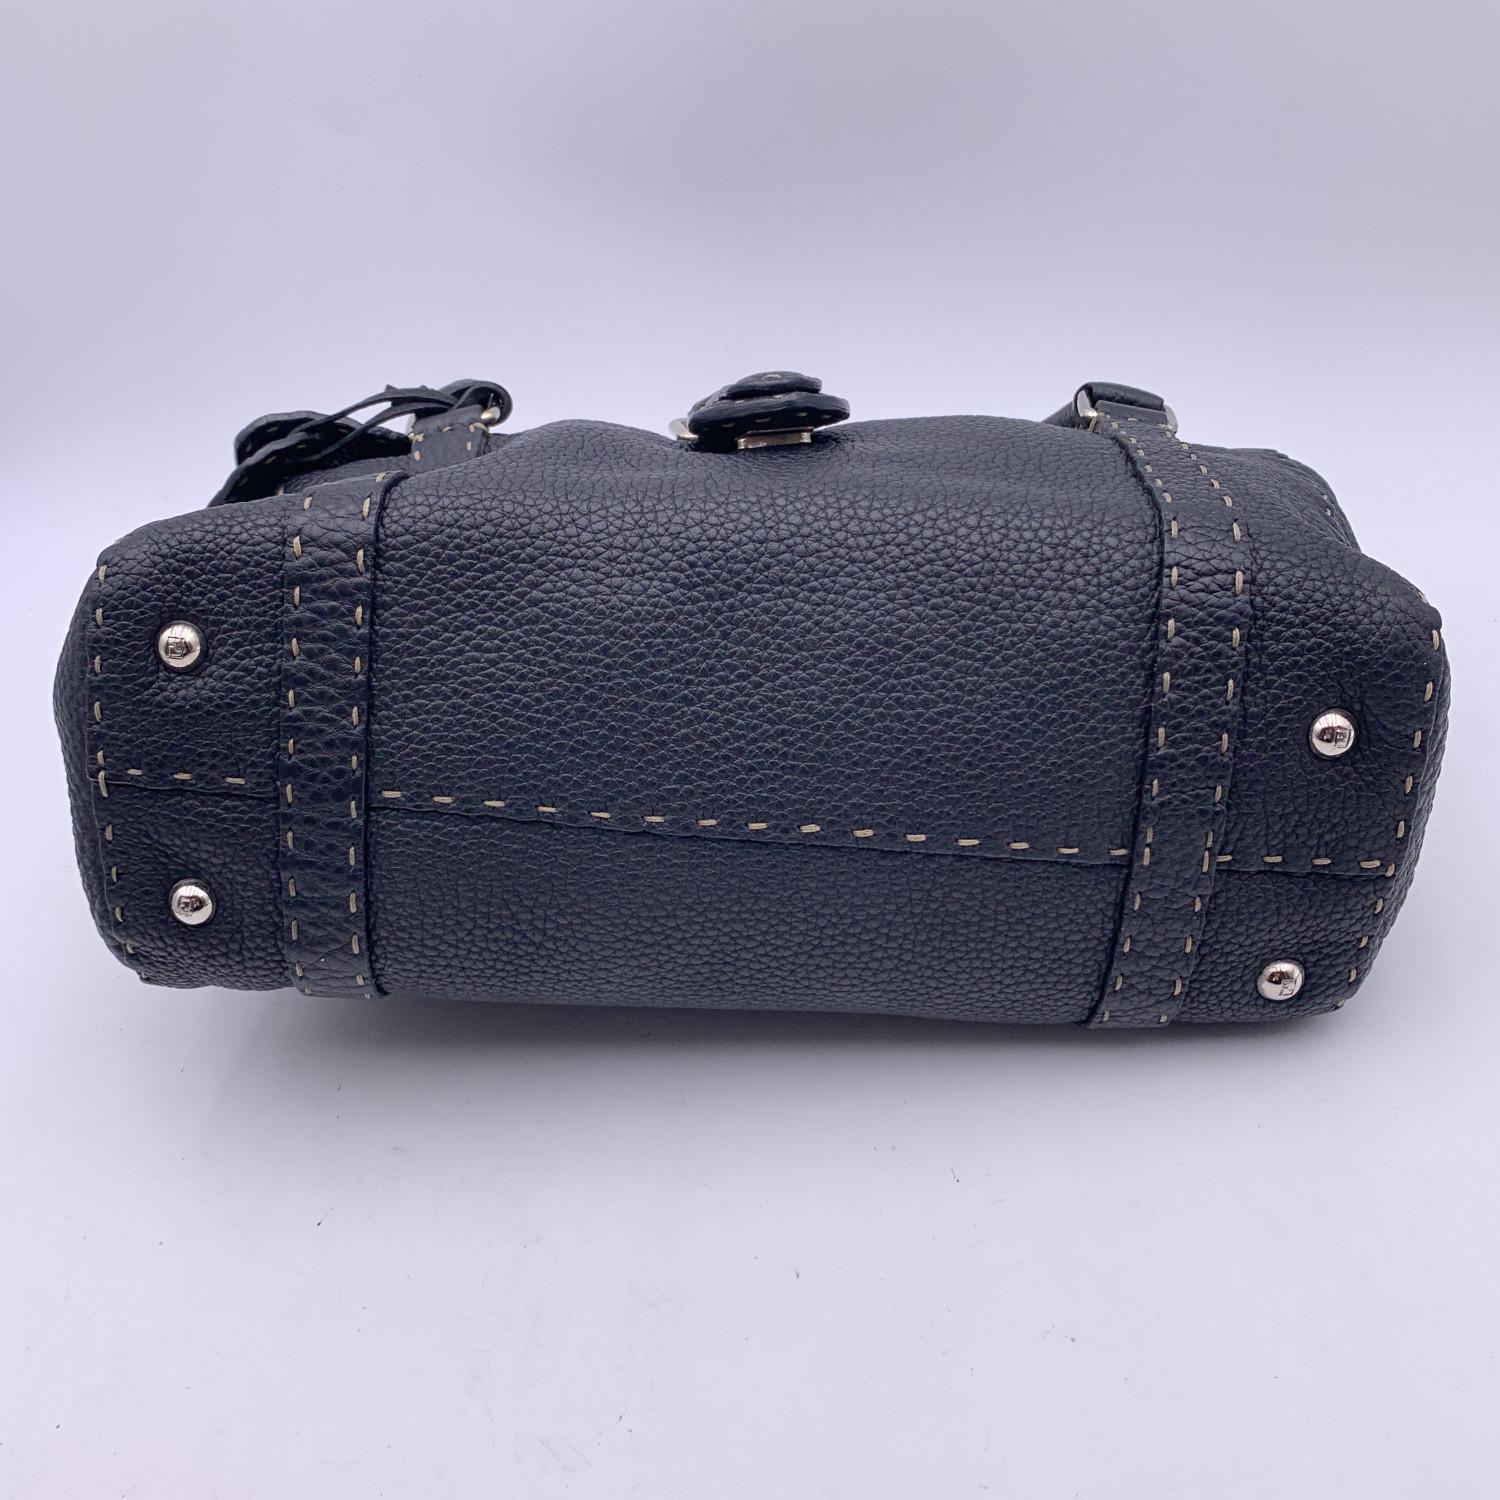 Fendi Selleria Black Leather Linda Satchel Handbag 2